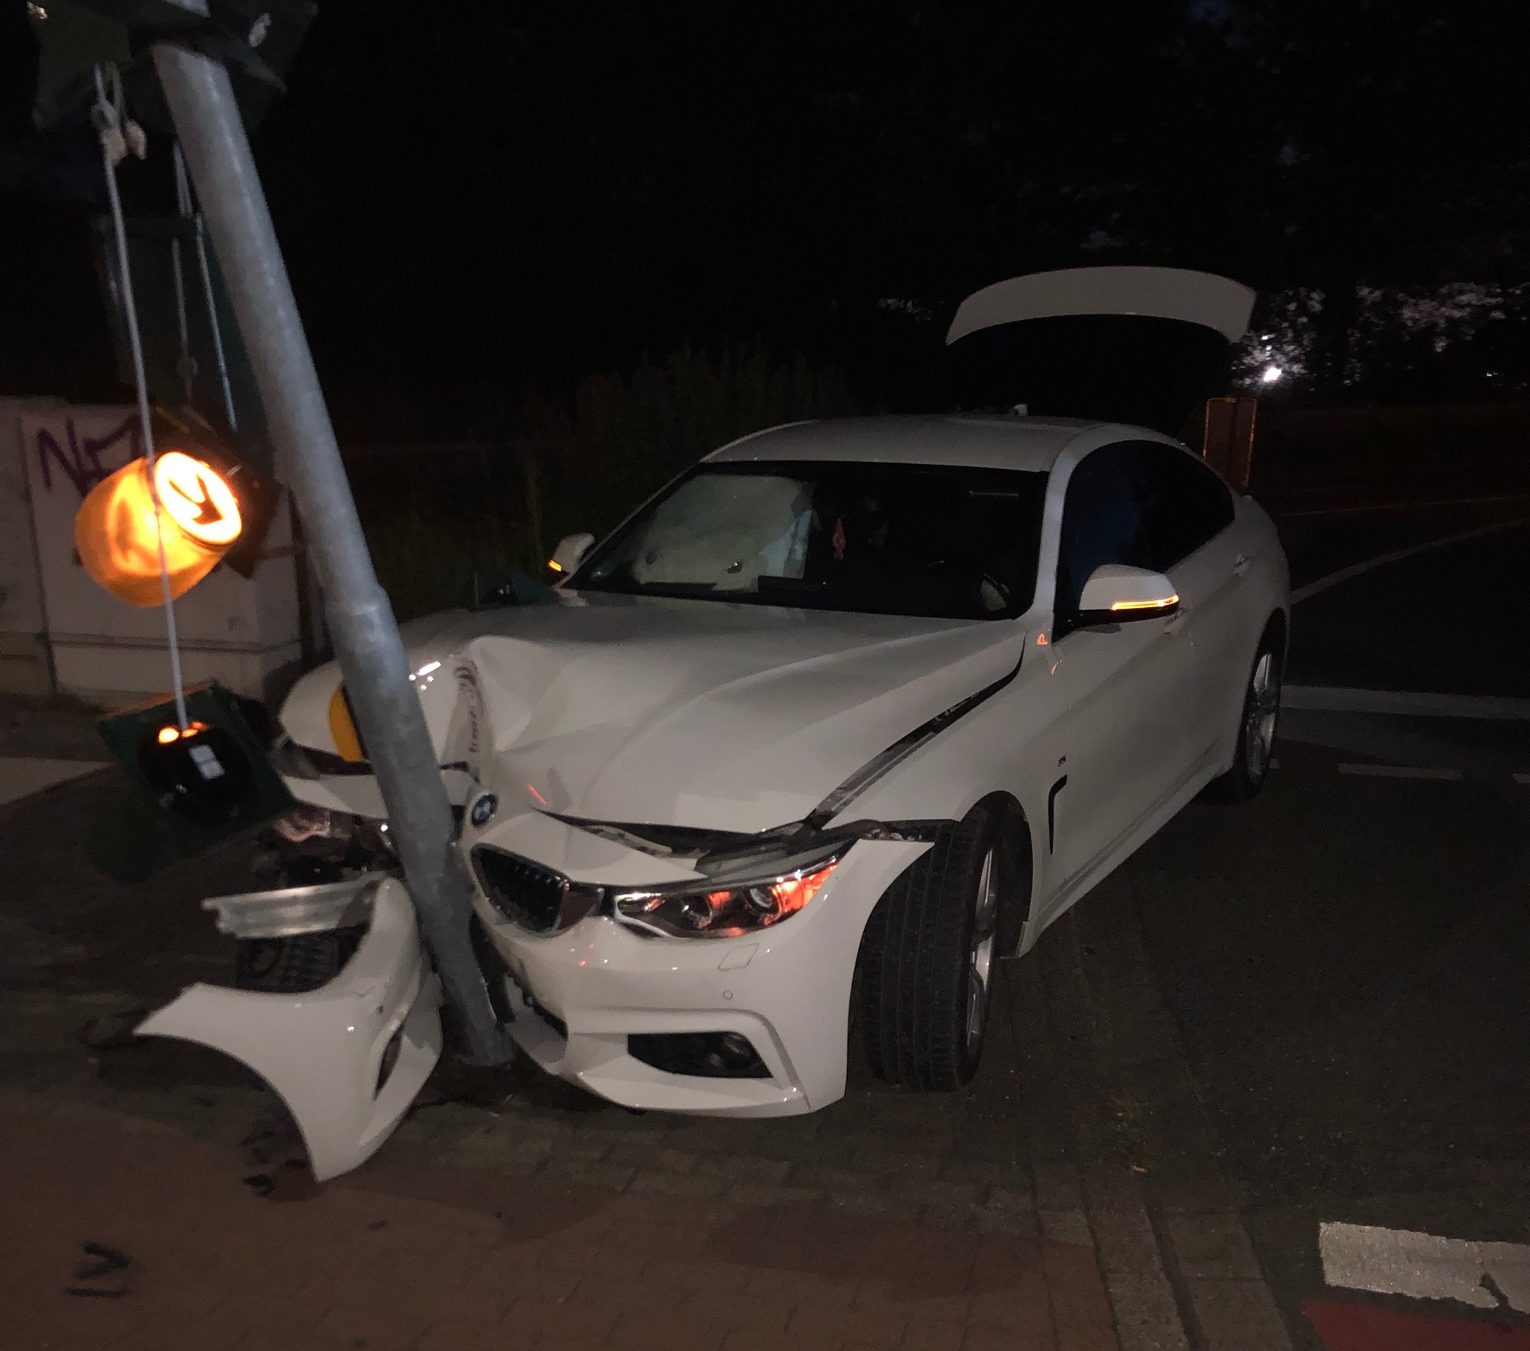 Ein 28jähriger BMW-Fahrer befuhr am Samstagmorgen, gegen 03:30 Uhr, die A59 in Richtung Düsseldorf. Als er die Ausfahrt Großenbaum abfuhr und beabsichtigte nach links in den Altenbrucher Damm einzubiegen, kam er nach rechts von der Fahrbahn ab und prallte gegen einen Ampelmast. Der Autofahrer wurde hierbei leicht verletzt. Es entstand erheblicher Sachschaden. Der Mast musste ausgetauscht werden. Der Pkw wurde abgeschleppt. Bei der Überprüfung der Fahrtüchtigkeit stellten die aufnehmenden Beamten fest, dass dieser erheblich unter Alkoholeinfluss stand. Ihm wurde auf der Wache eine Blutprobe entnommen und sein Führerschein beschlagnahmt